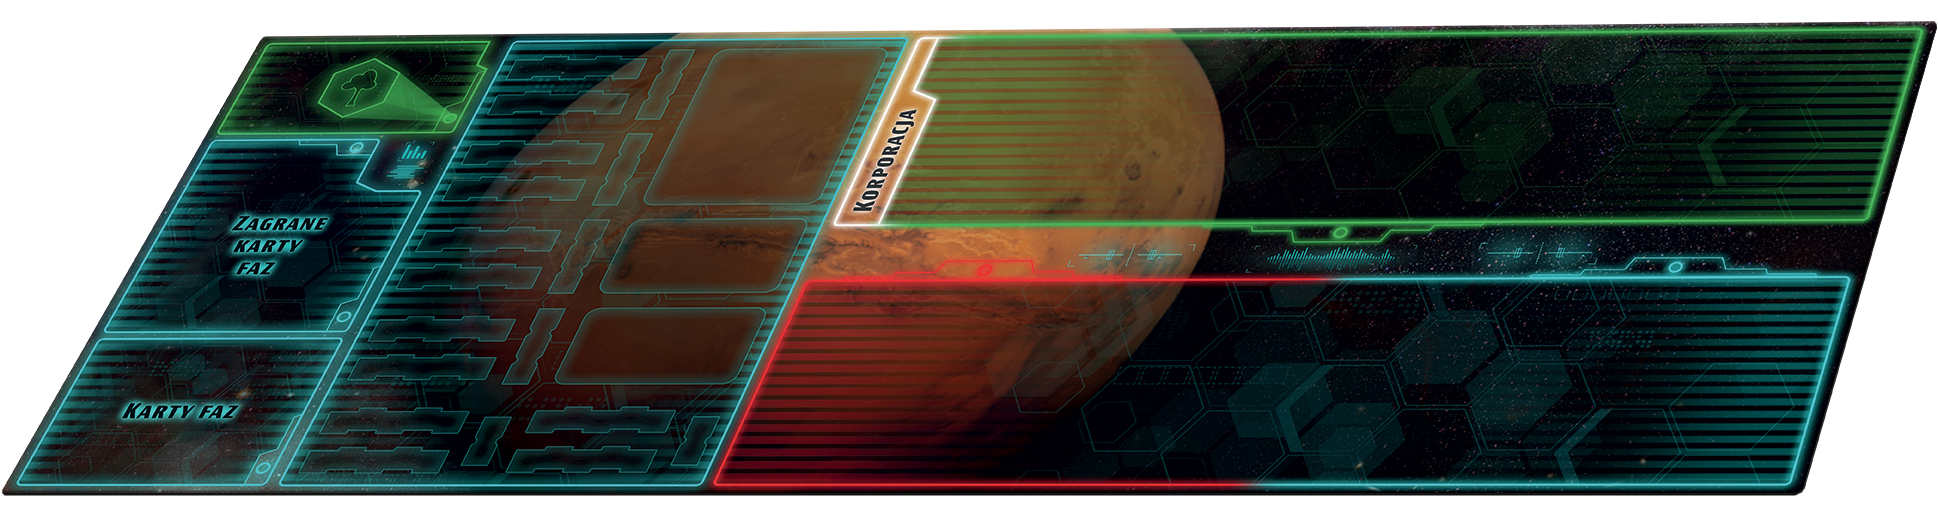 Terraformacja Marsa: Ekspedycja Ares - zestaw dwóch mat do gry